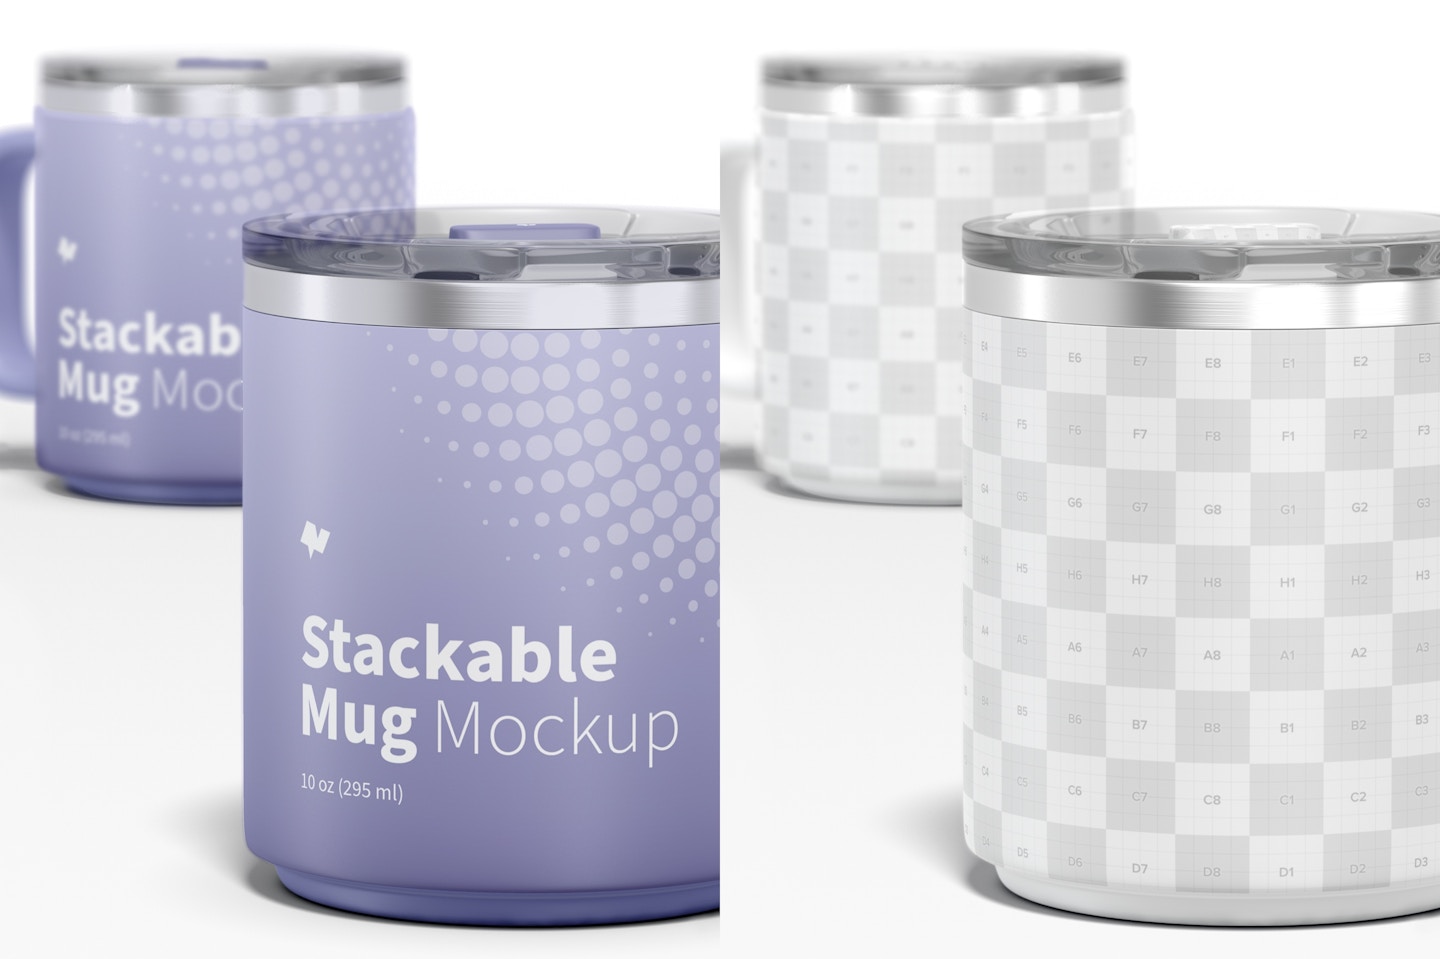 10 oz Stackable Mug Mockup, Close Up